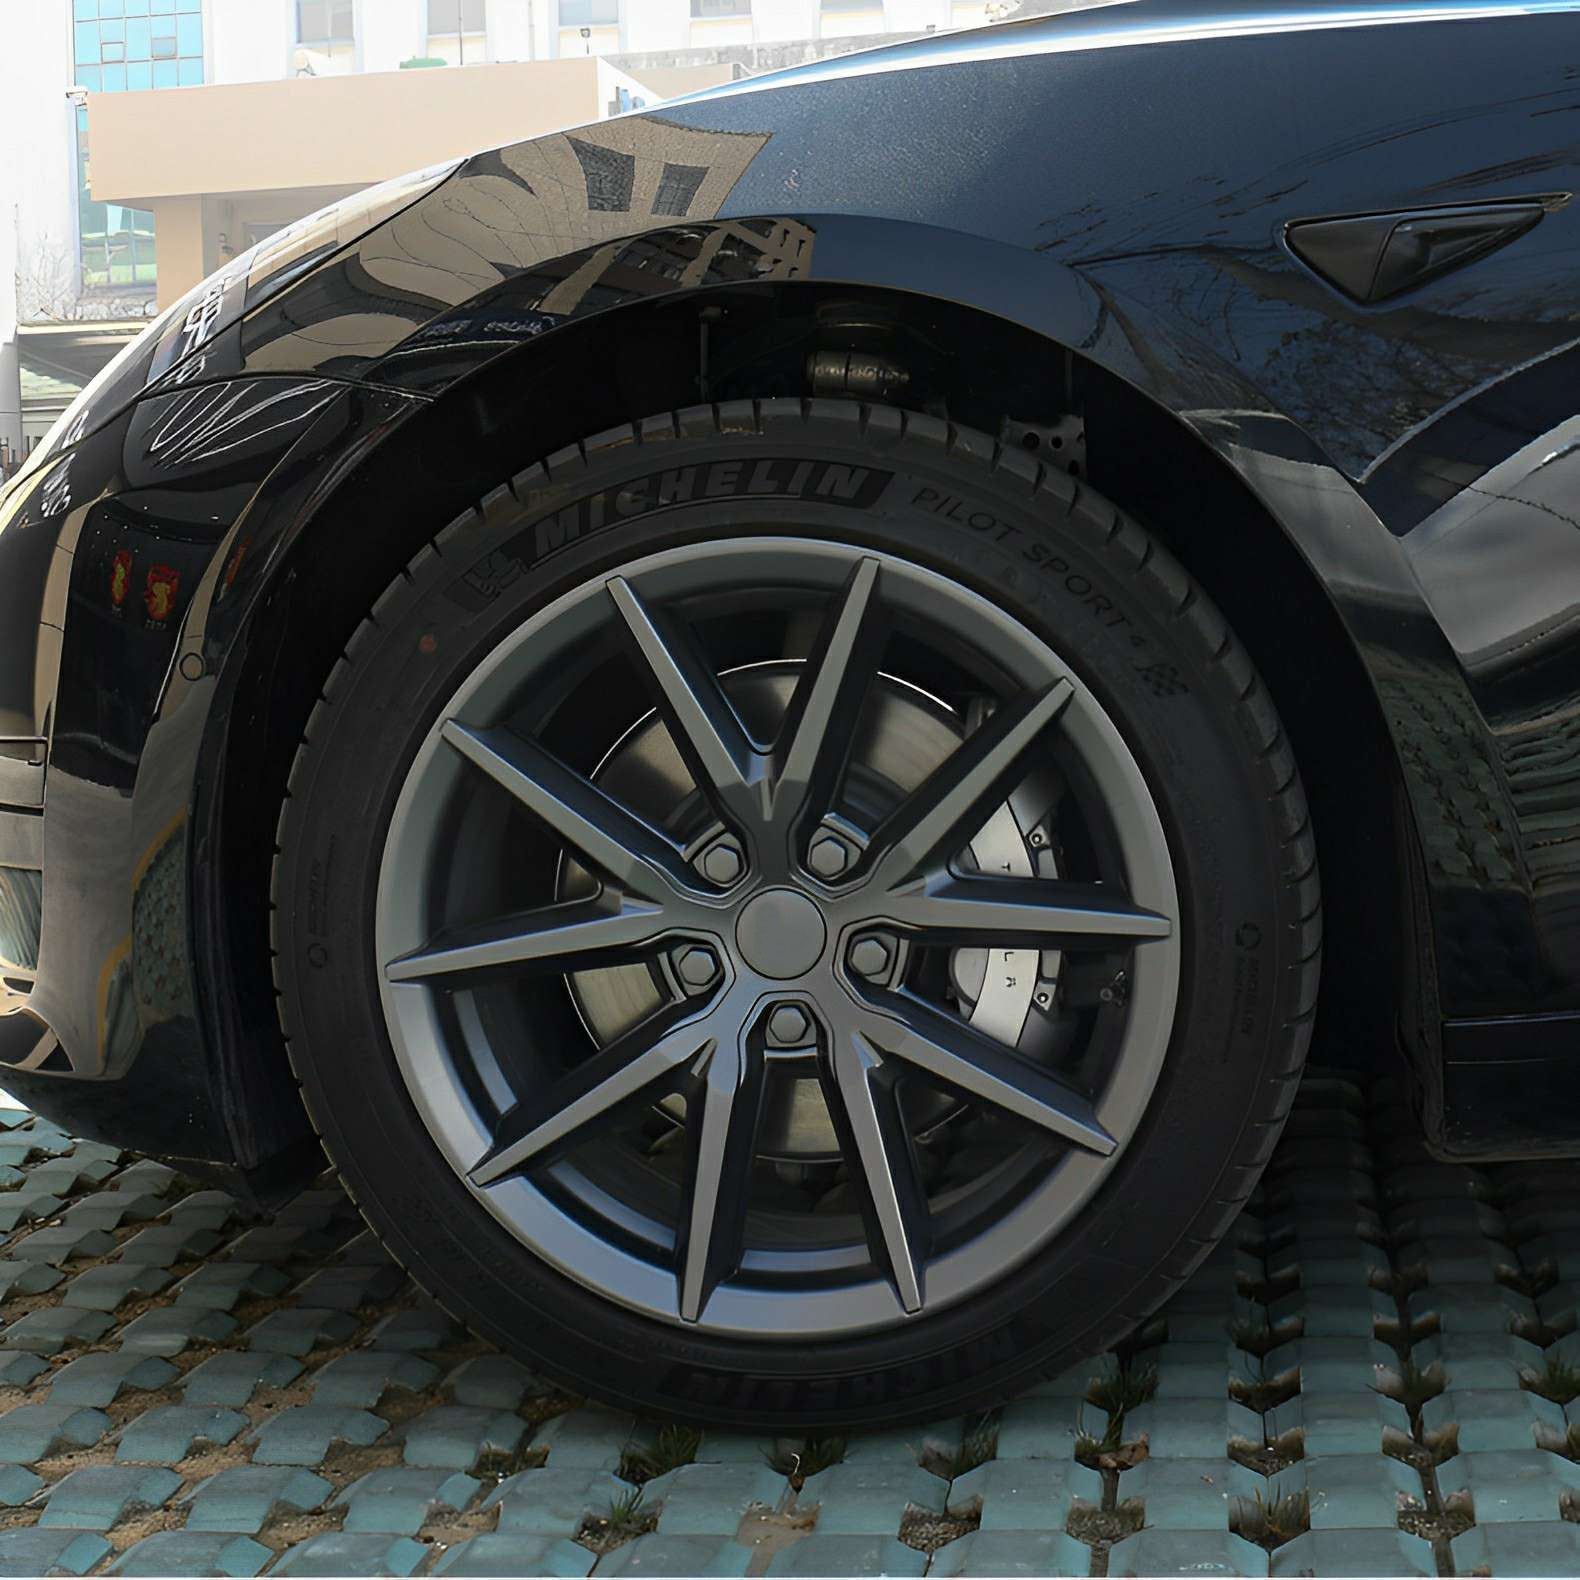 Tesla Model 3/Y Couvre-étriers de frein (4 pièces) (2017-2023)